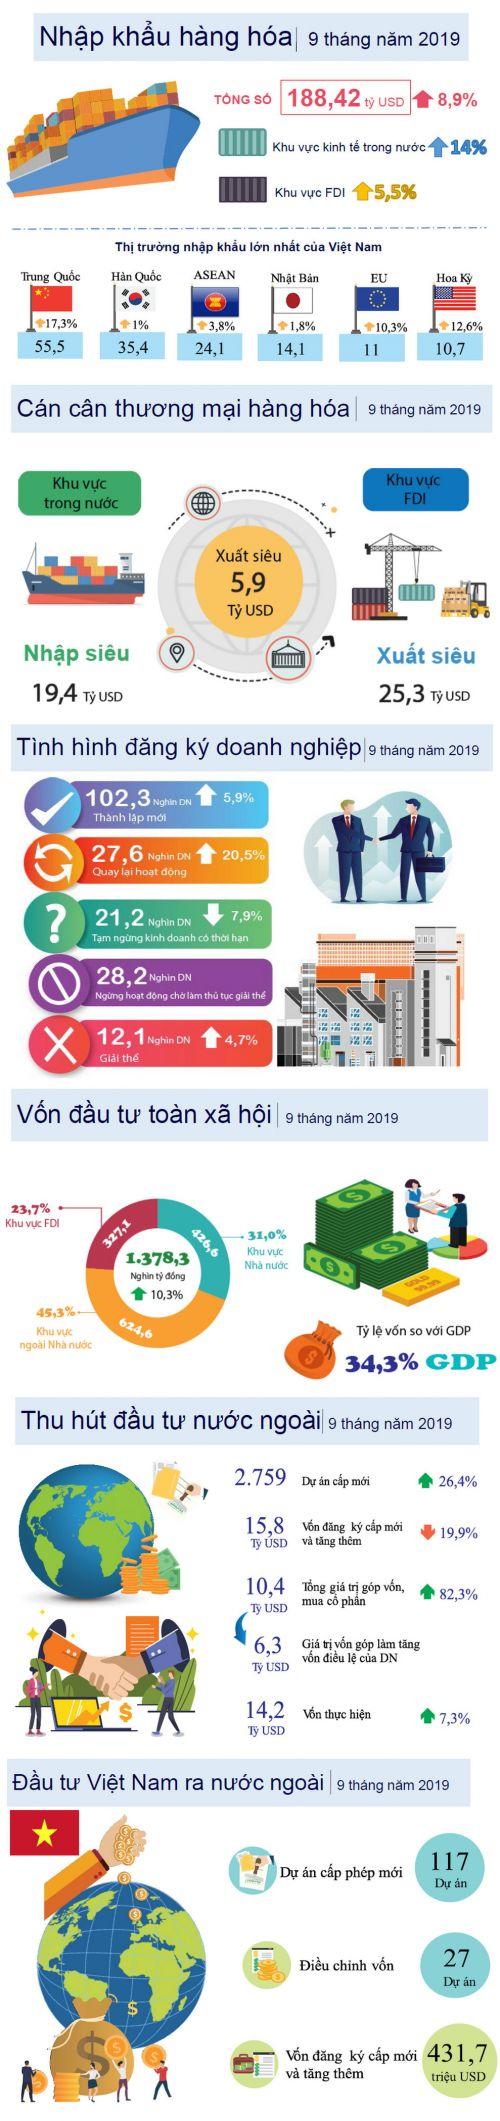 [Infographic] Toàn cảnh kinh tế xã hội 9 tháng đầu năm 2019 qua những con số